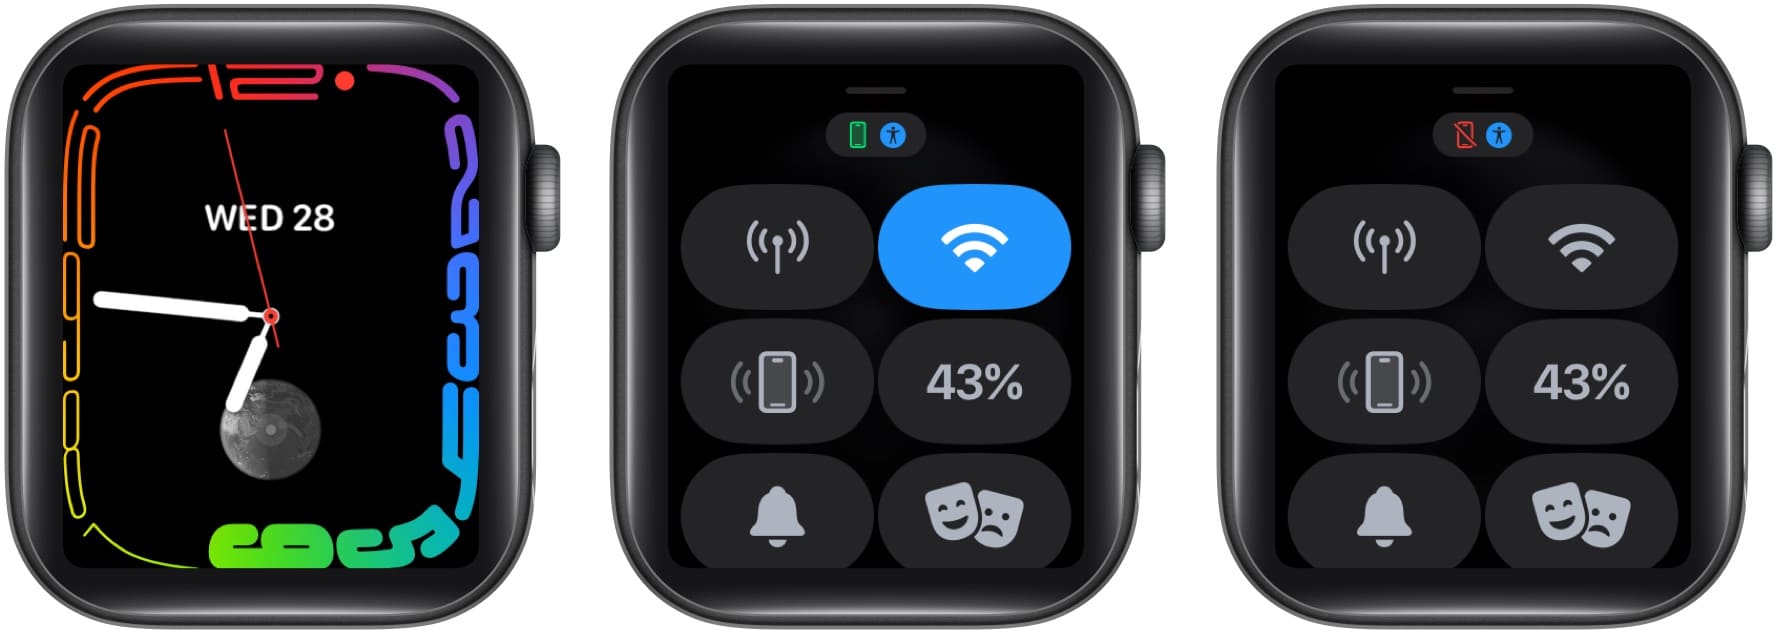 Az iPhone kapcsolat állapotának ellenőrzése az Apple Watchon